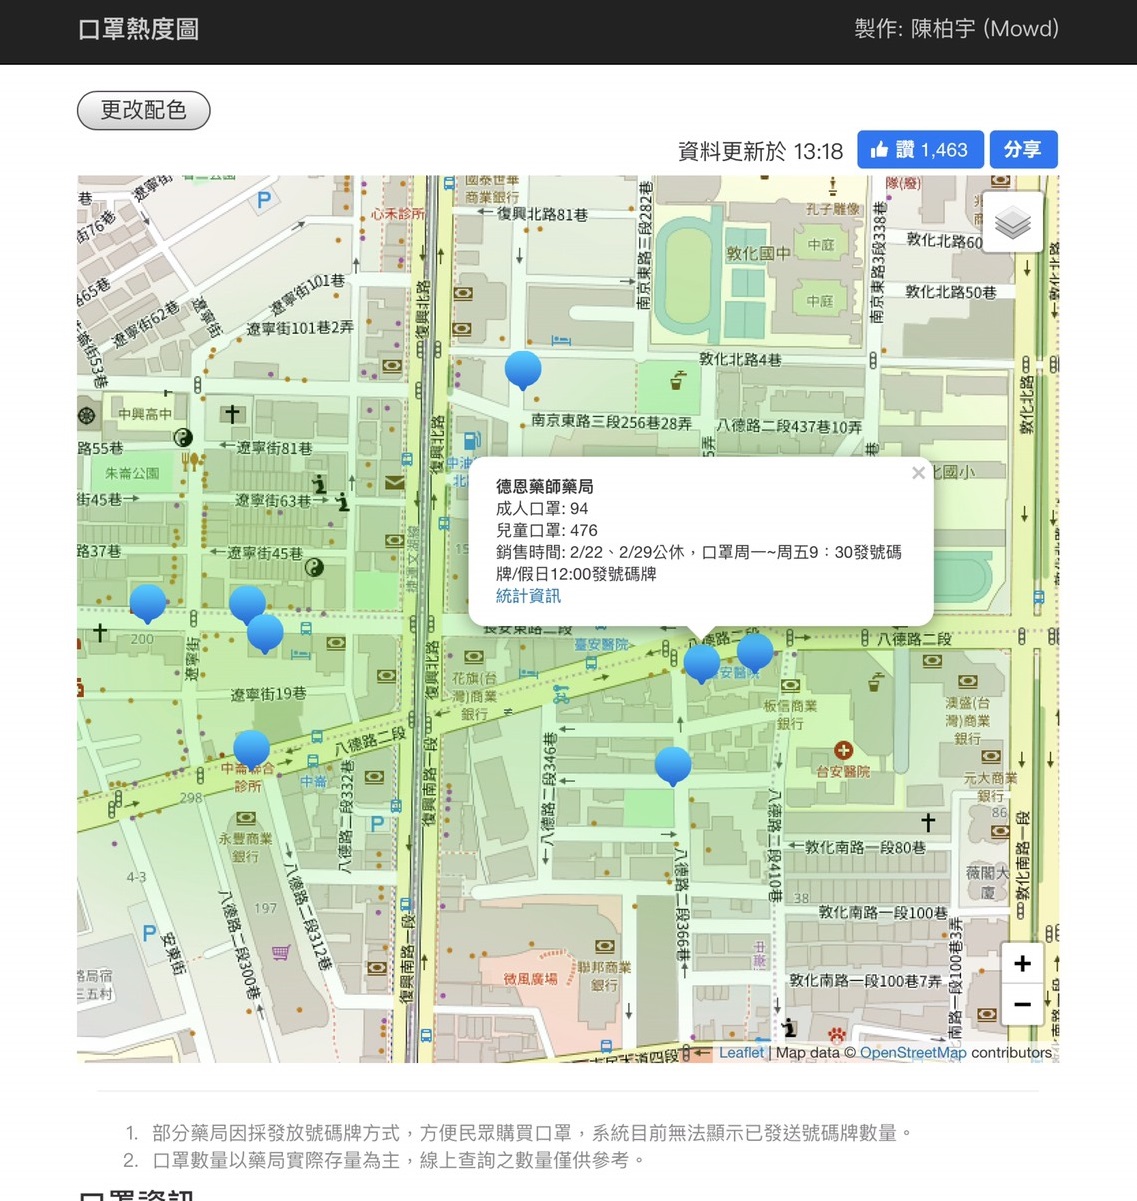 薬局のマスクの在庫状況が分かる地図の画面。台湾当局がデータを提供し、民間の有志が競ってサイトやスマートフォンのアプリを開発した